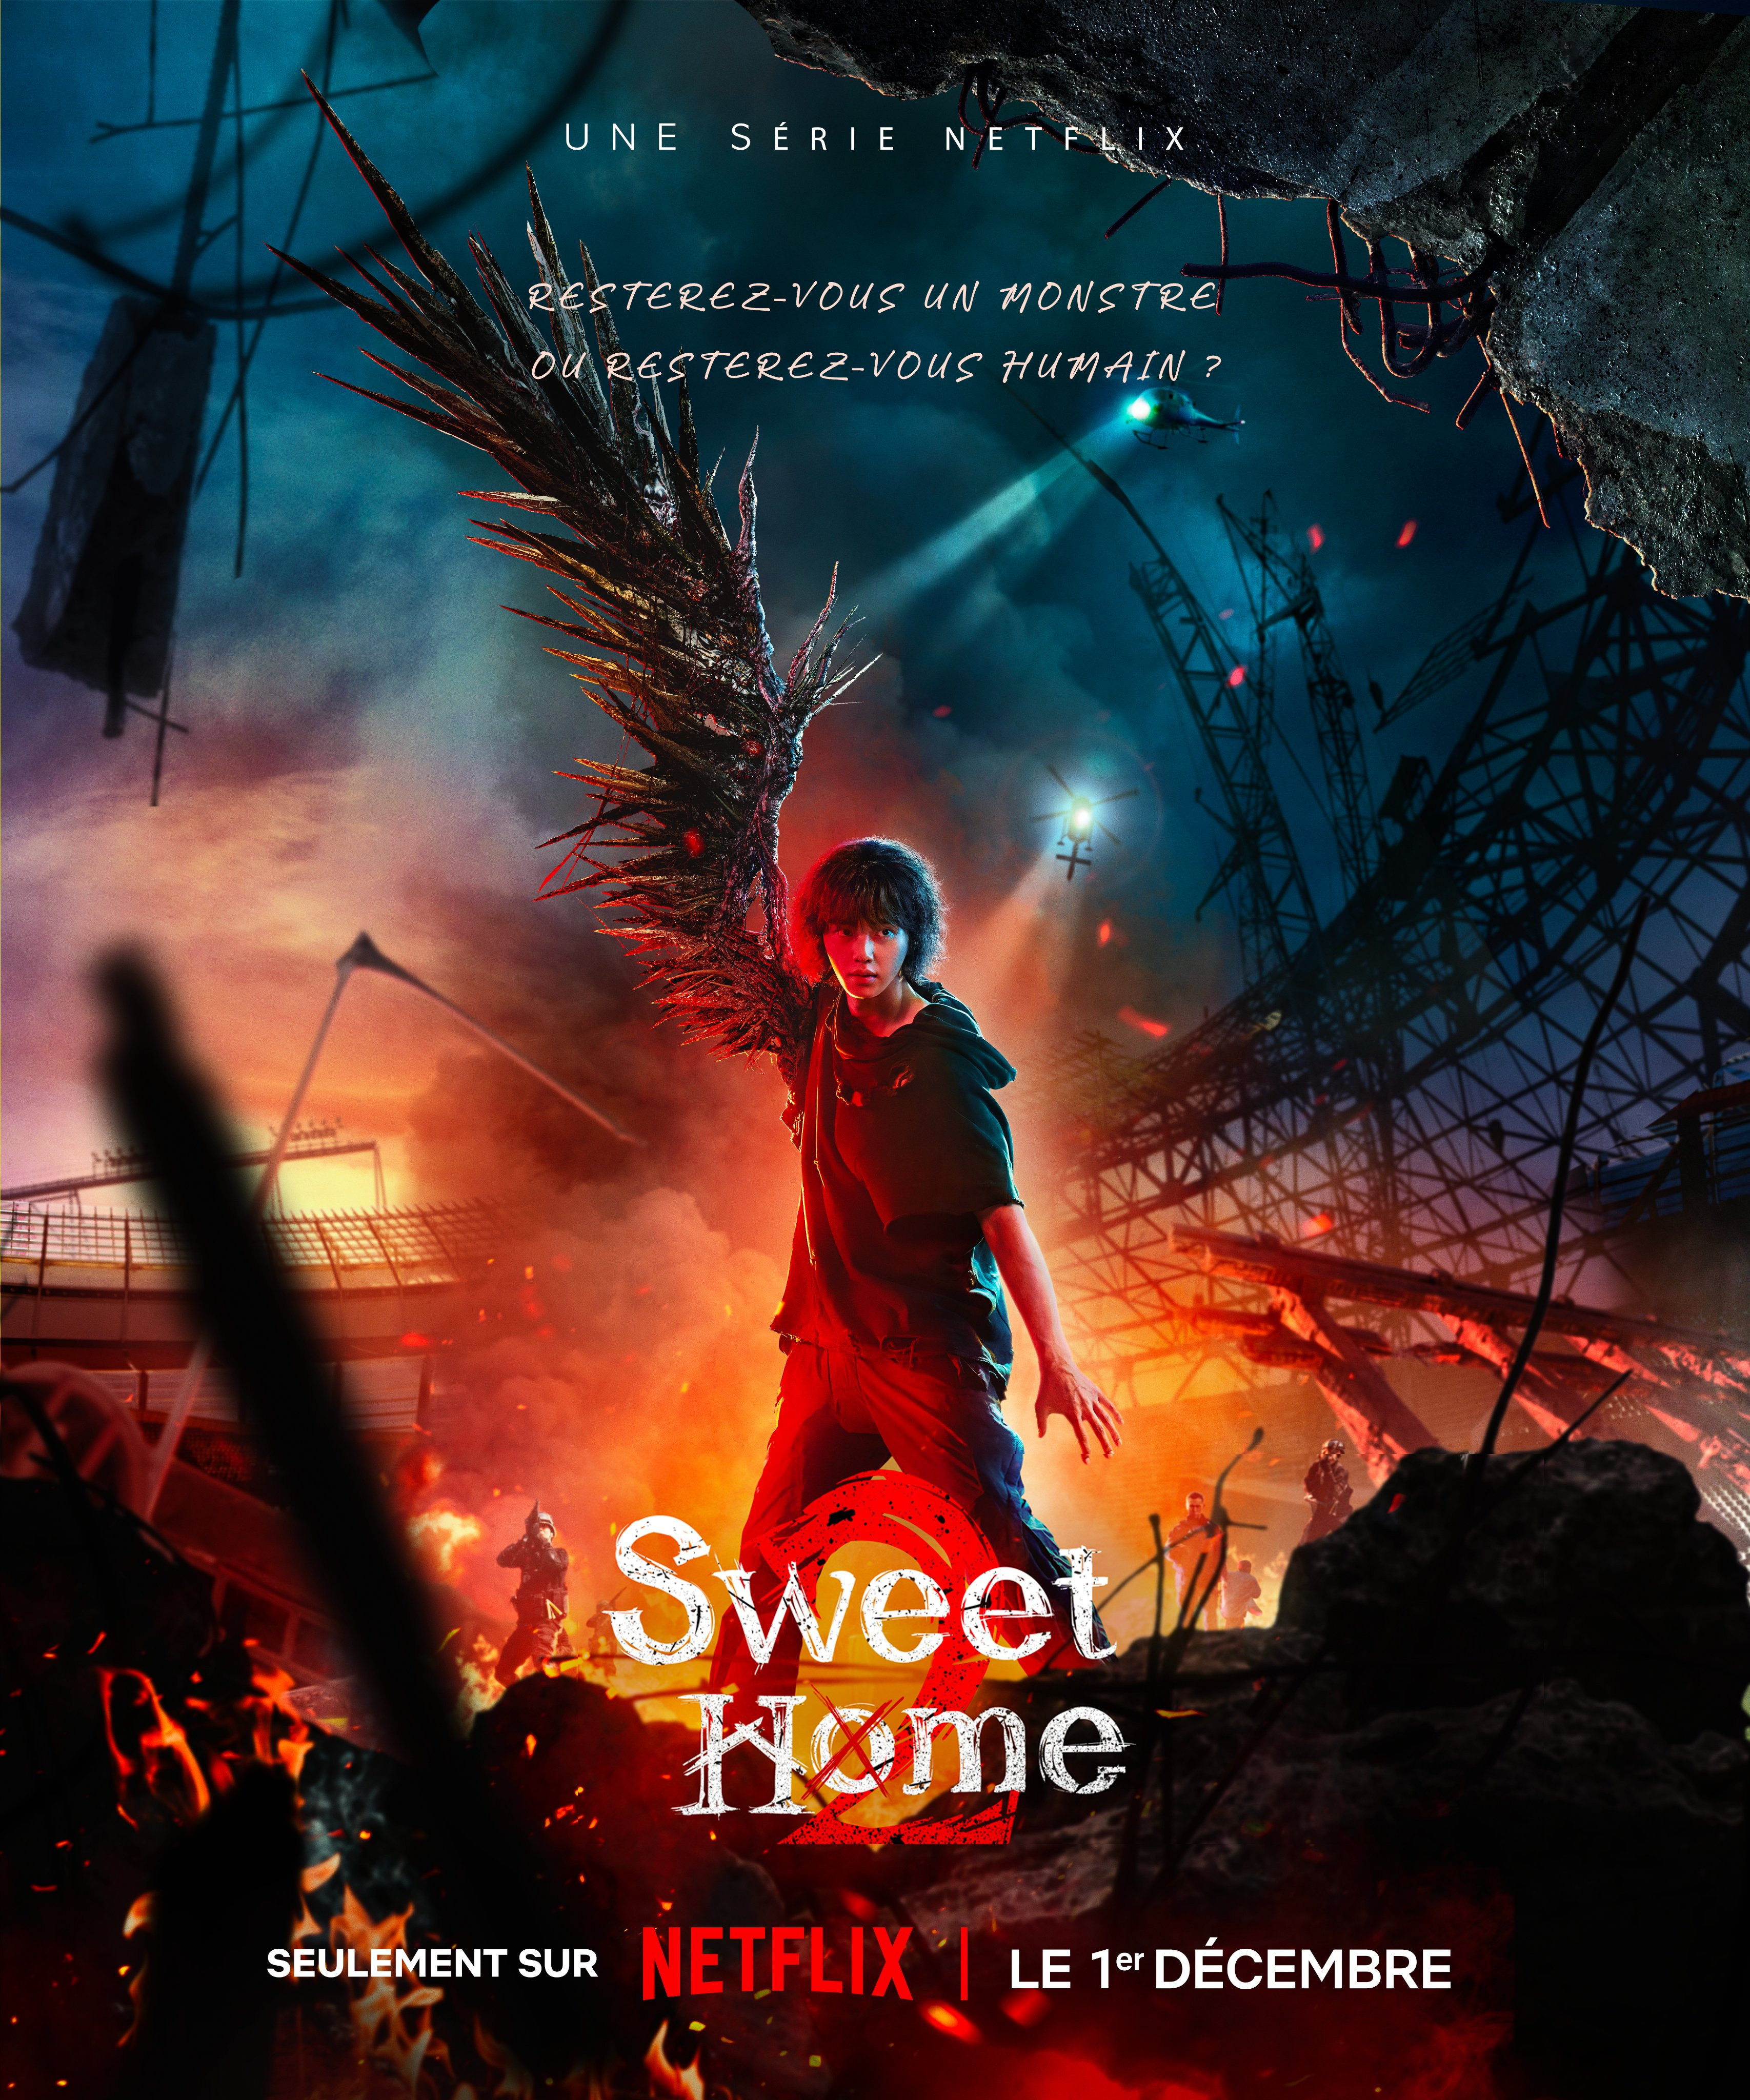 Visuel dramatique de la deuxième saison de Sweet Home sur Netflix